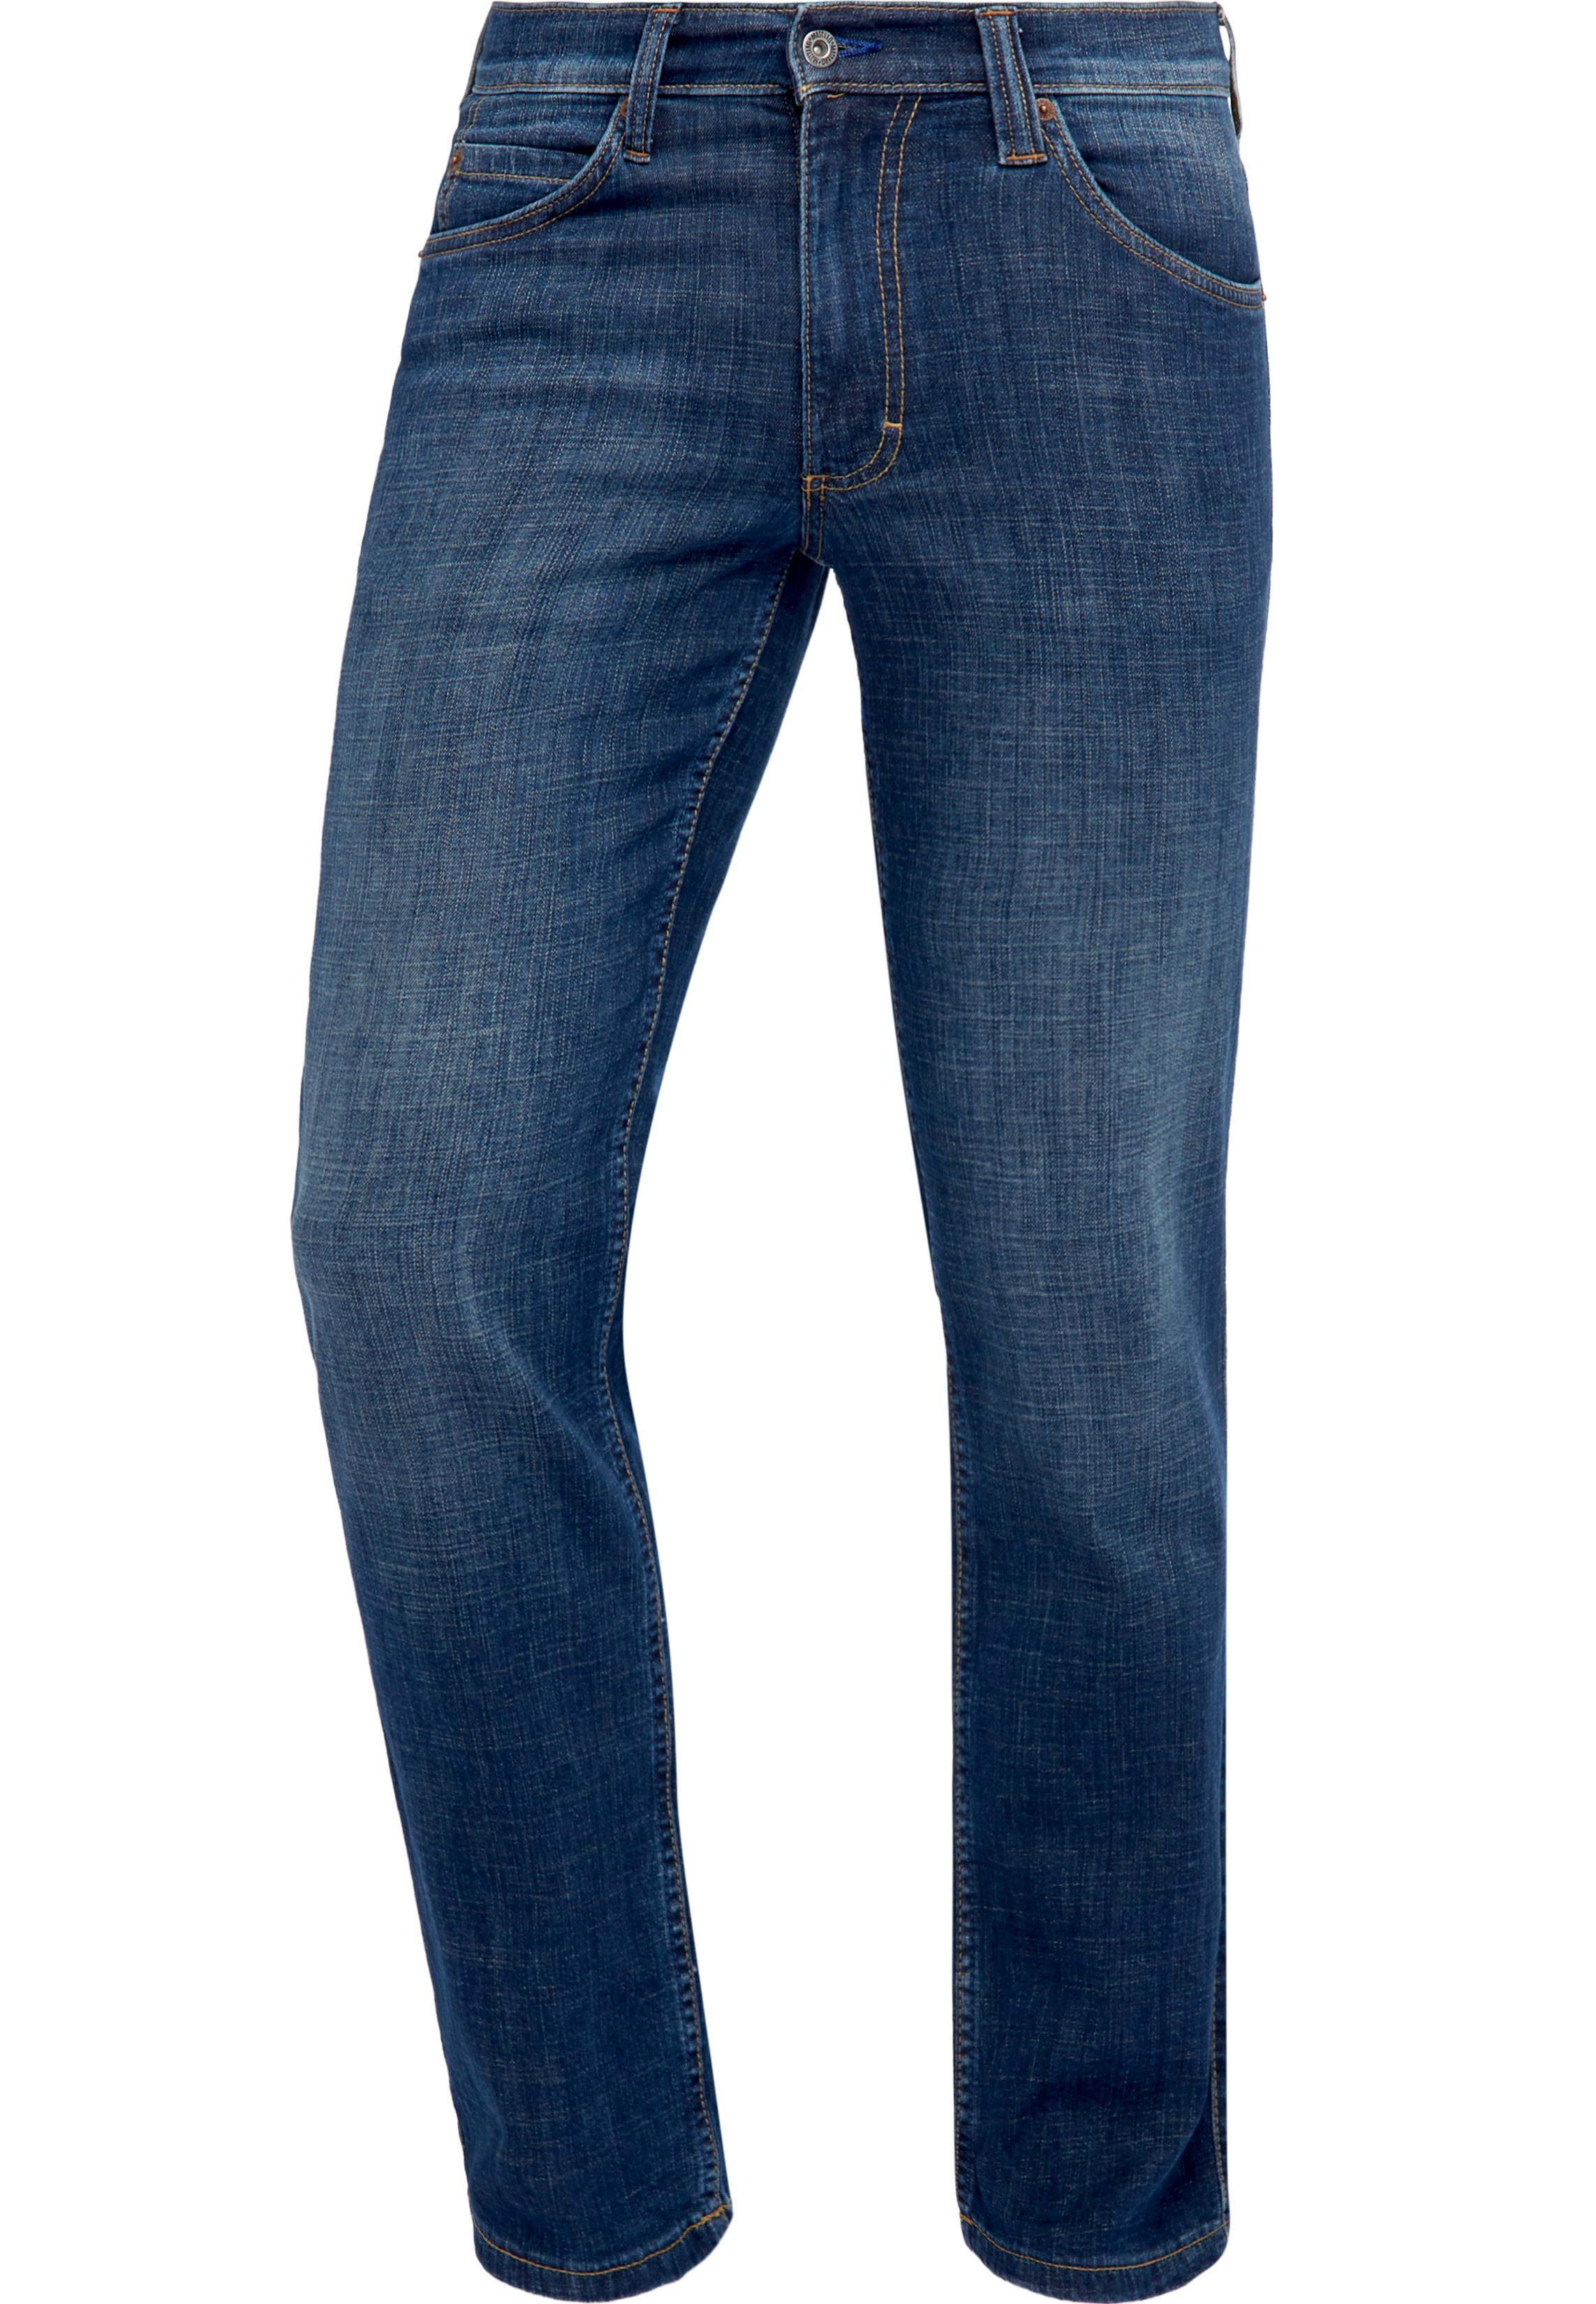 MUSTANG Jeans »Tramper« online kaufen | OTTO